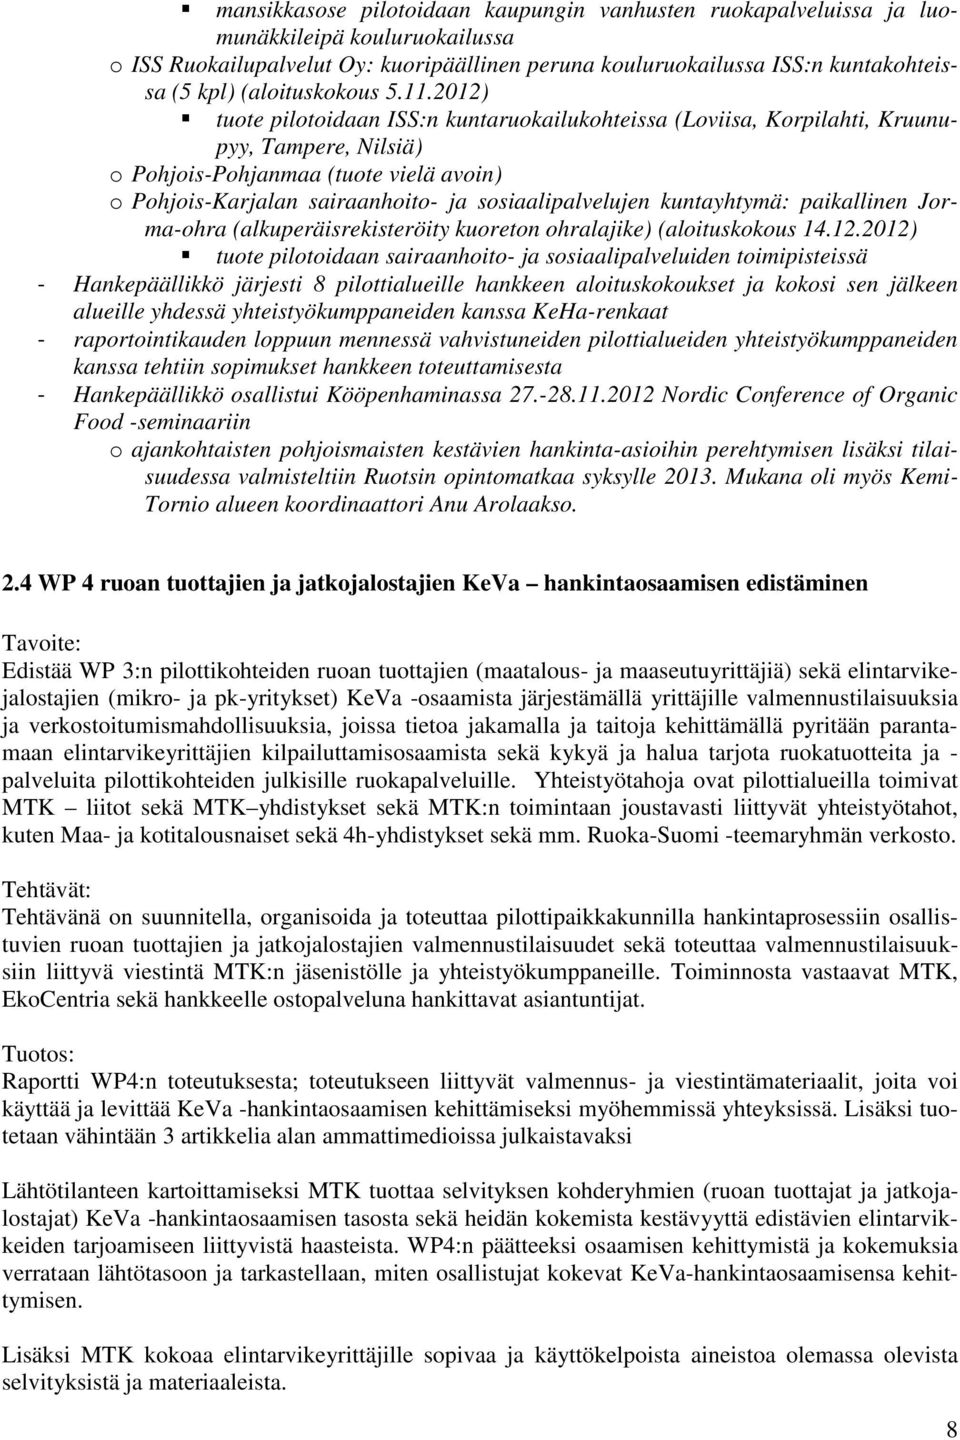 2012) tuote pilotoidaan ISS:n kuntaruokailukohteissa (Loviisa, Korpilahti, Kruunupyy, Tampere, Nilsiä) o Pohjois-Pohjanmaa (tuote vielä avoin) o Pohjois-Karjalan sairaanhoito- ja sosiaalipalvelujen